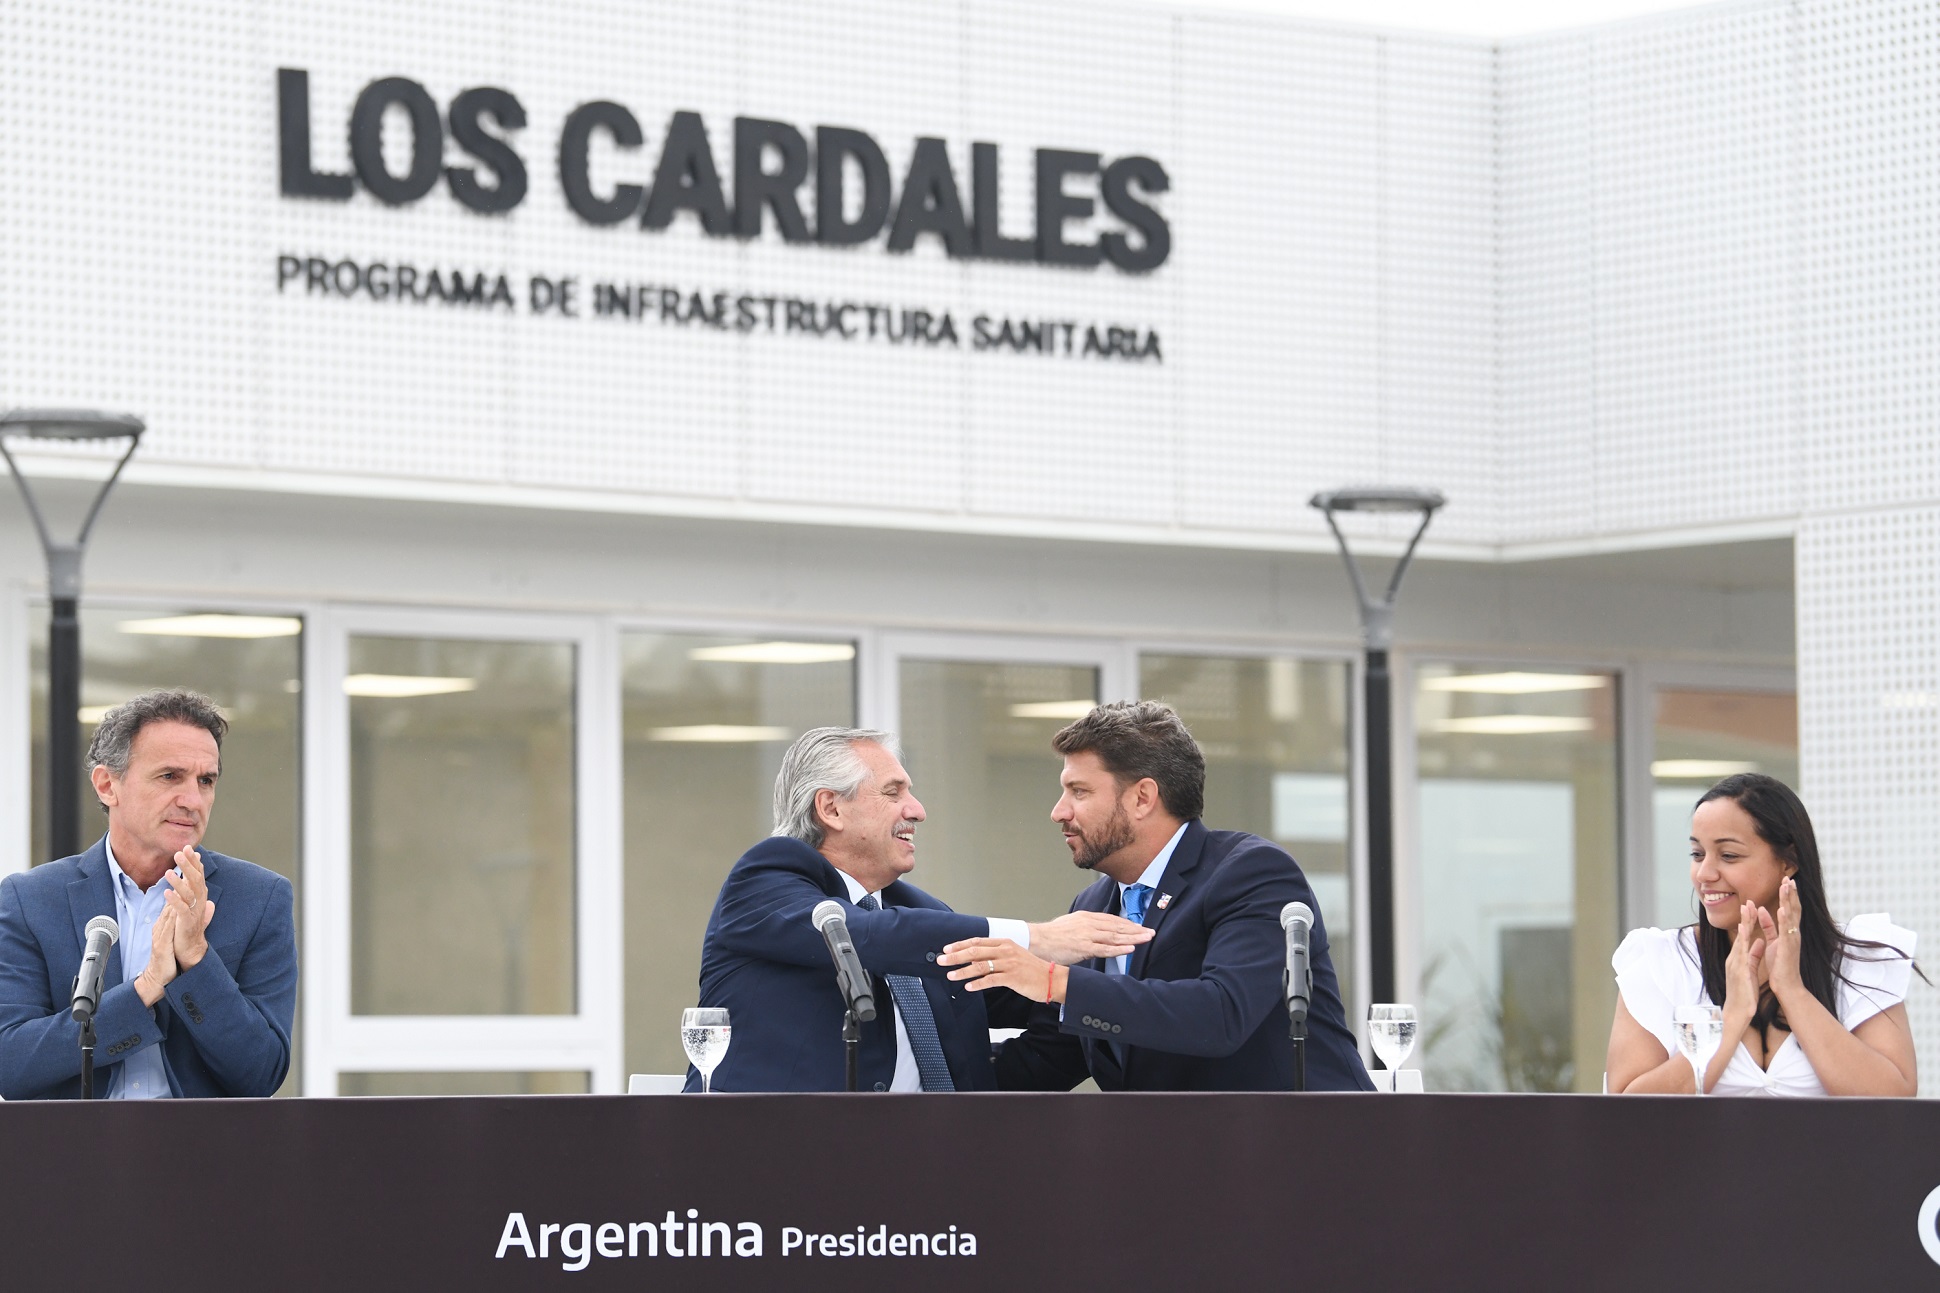 Estoy seguro de que ya dejamos los cimientos para que la Argentina crezca con igualdad, afirmó el presidente al inaugurar el primer hospital público de Los Cardales